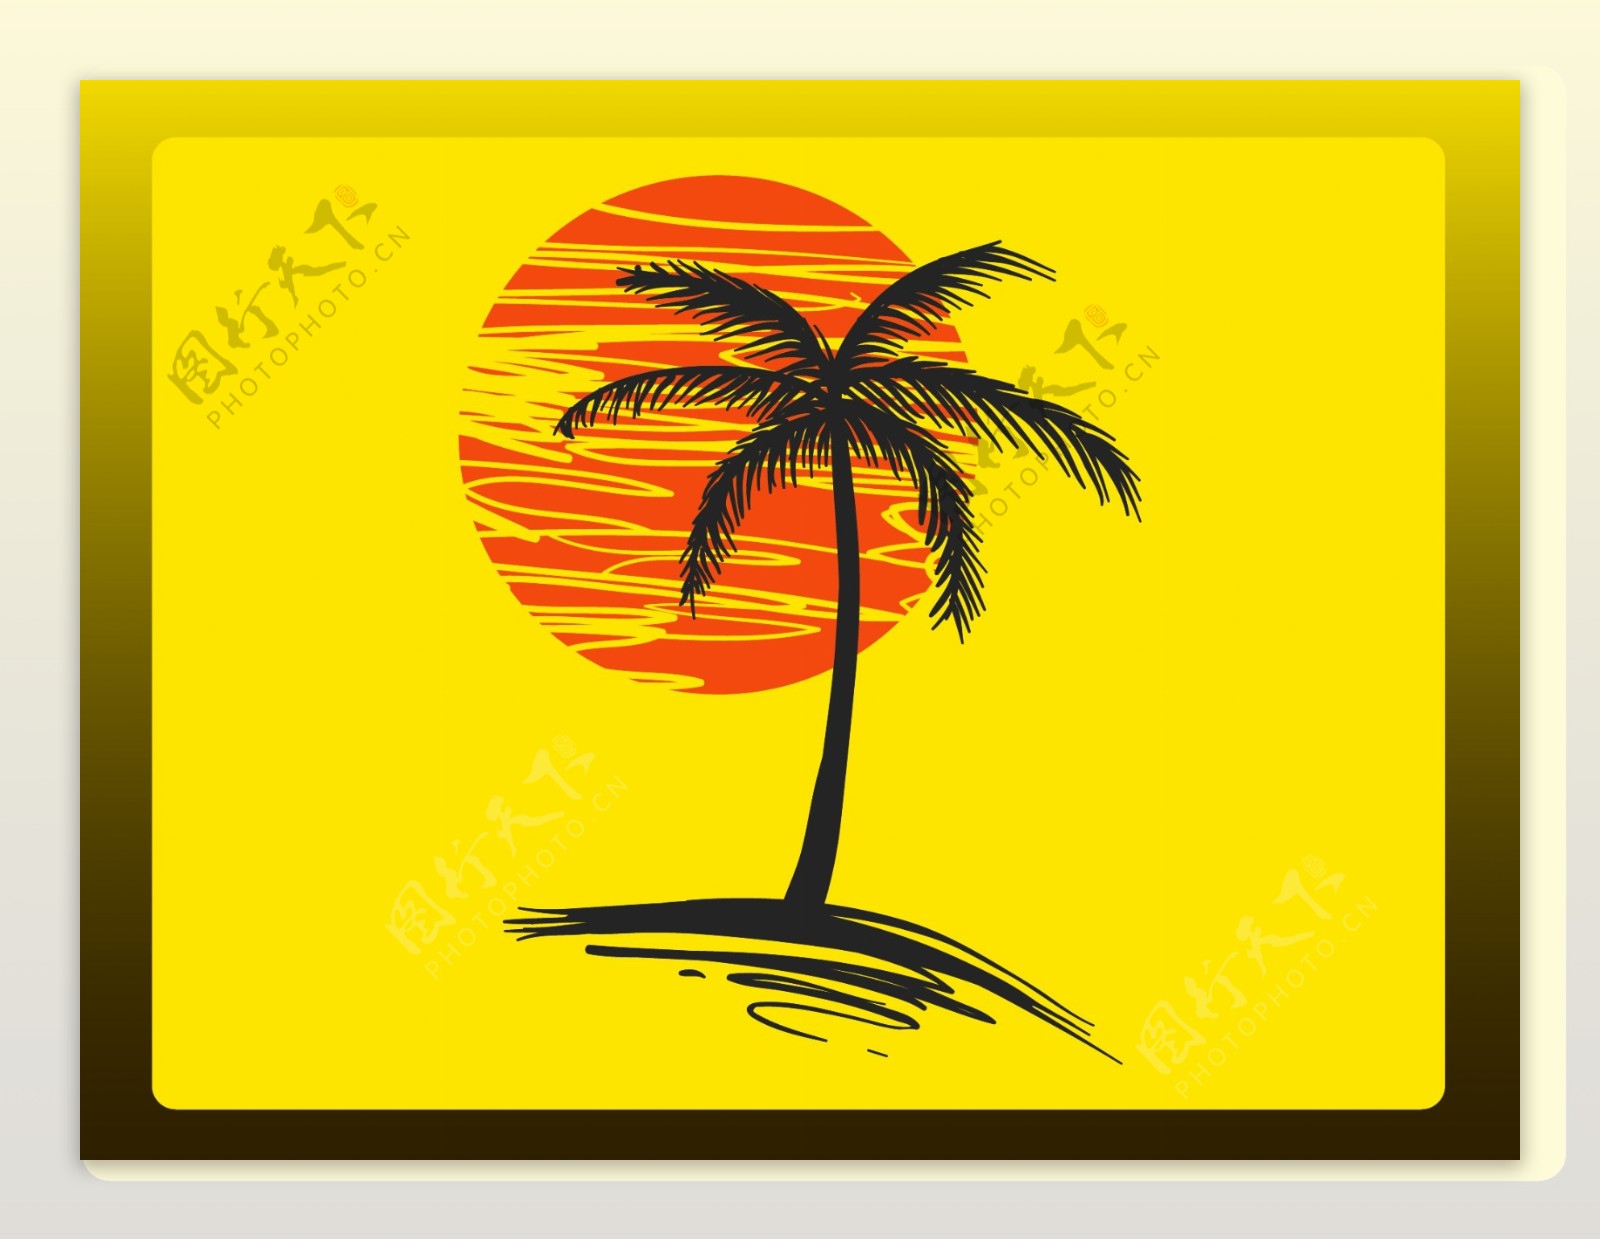 太阳椰子树黄色背景素材